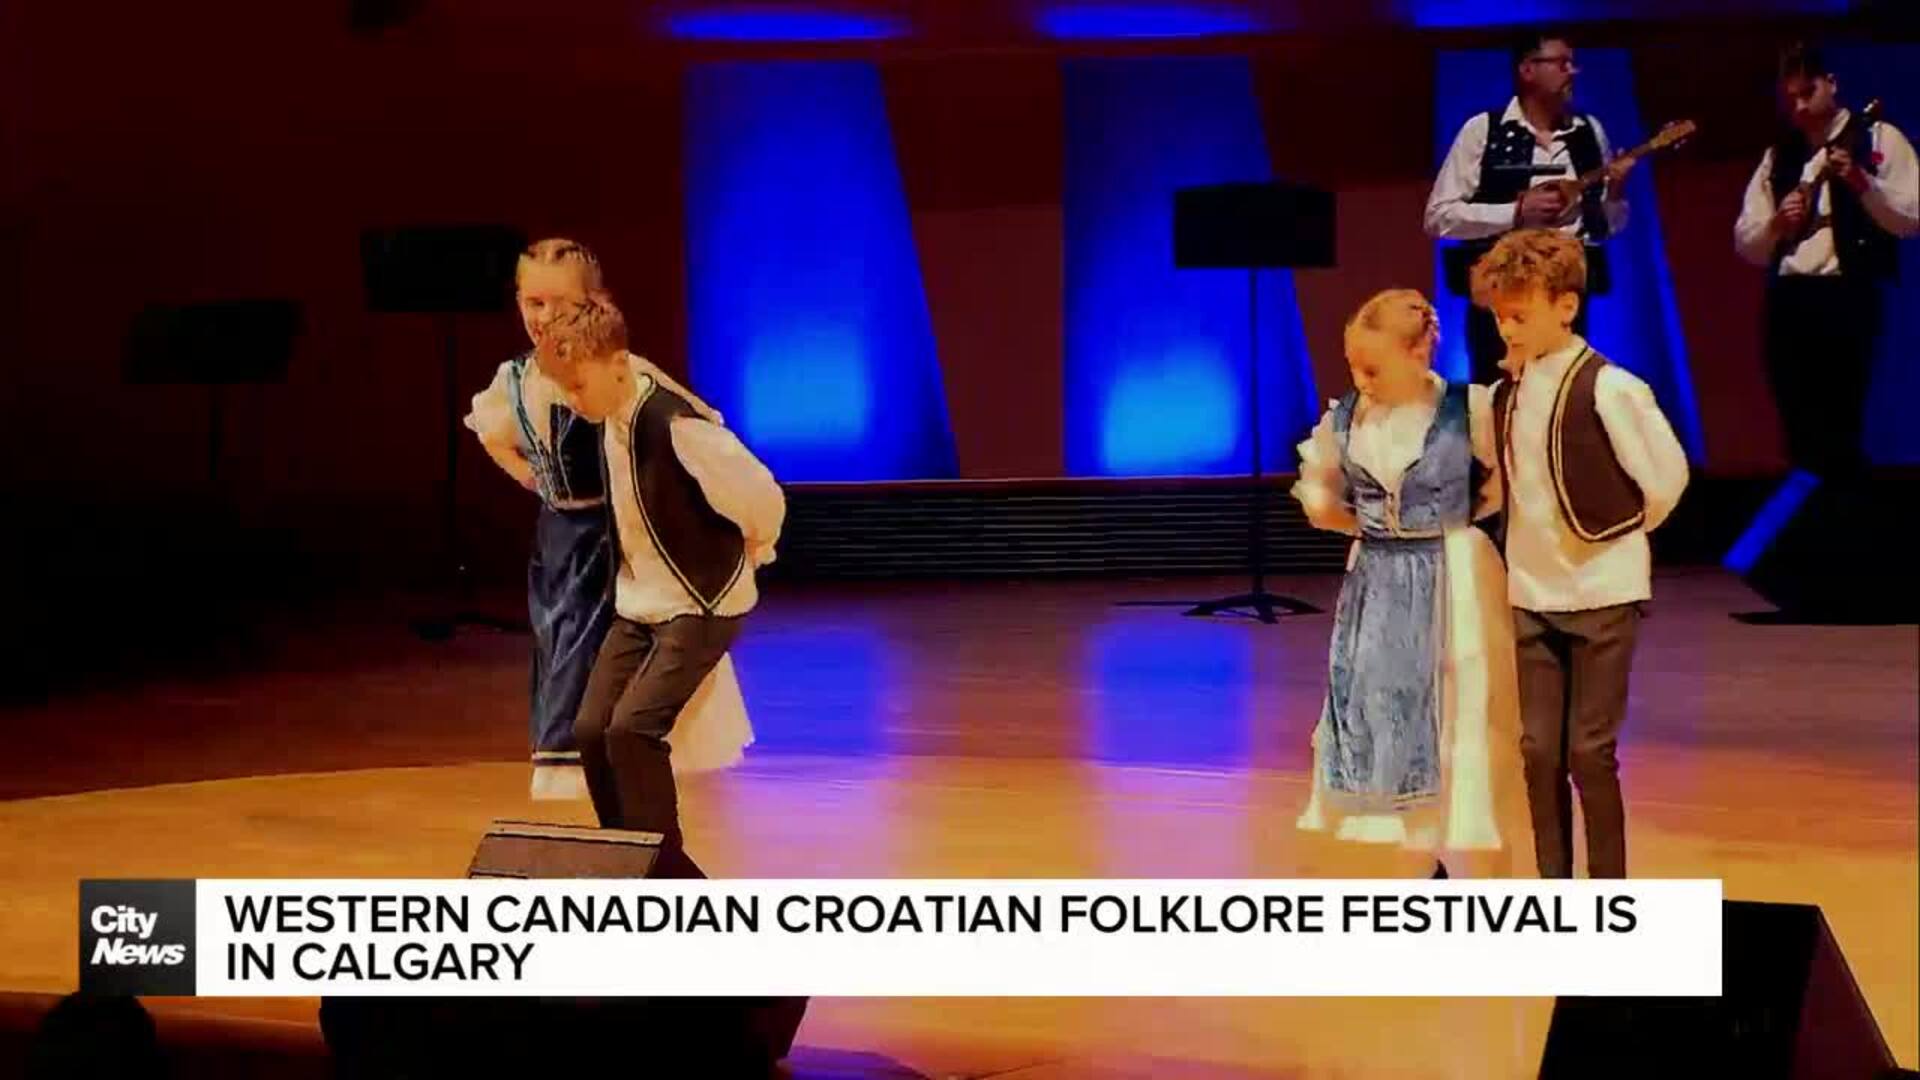 Western Canadian Croatian Folklore Festival is in Calgary